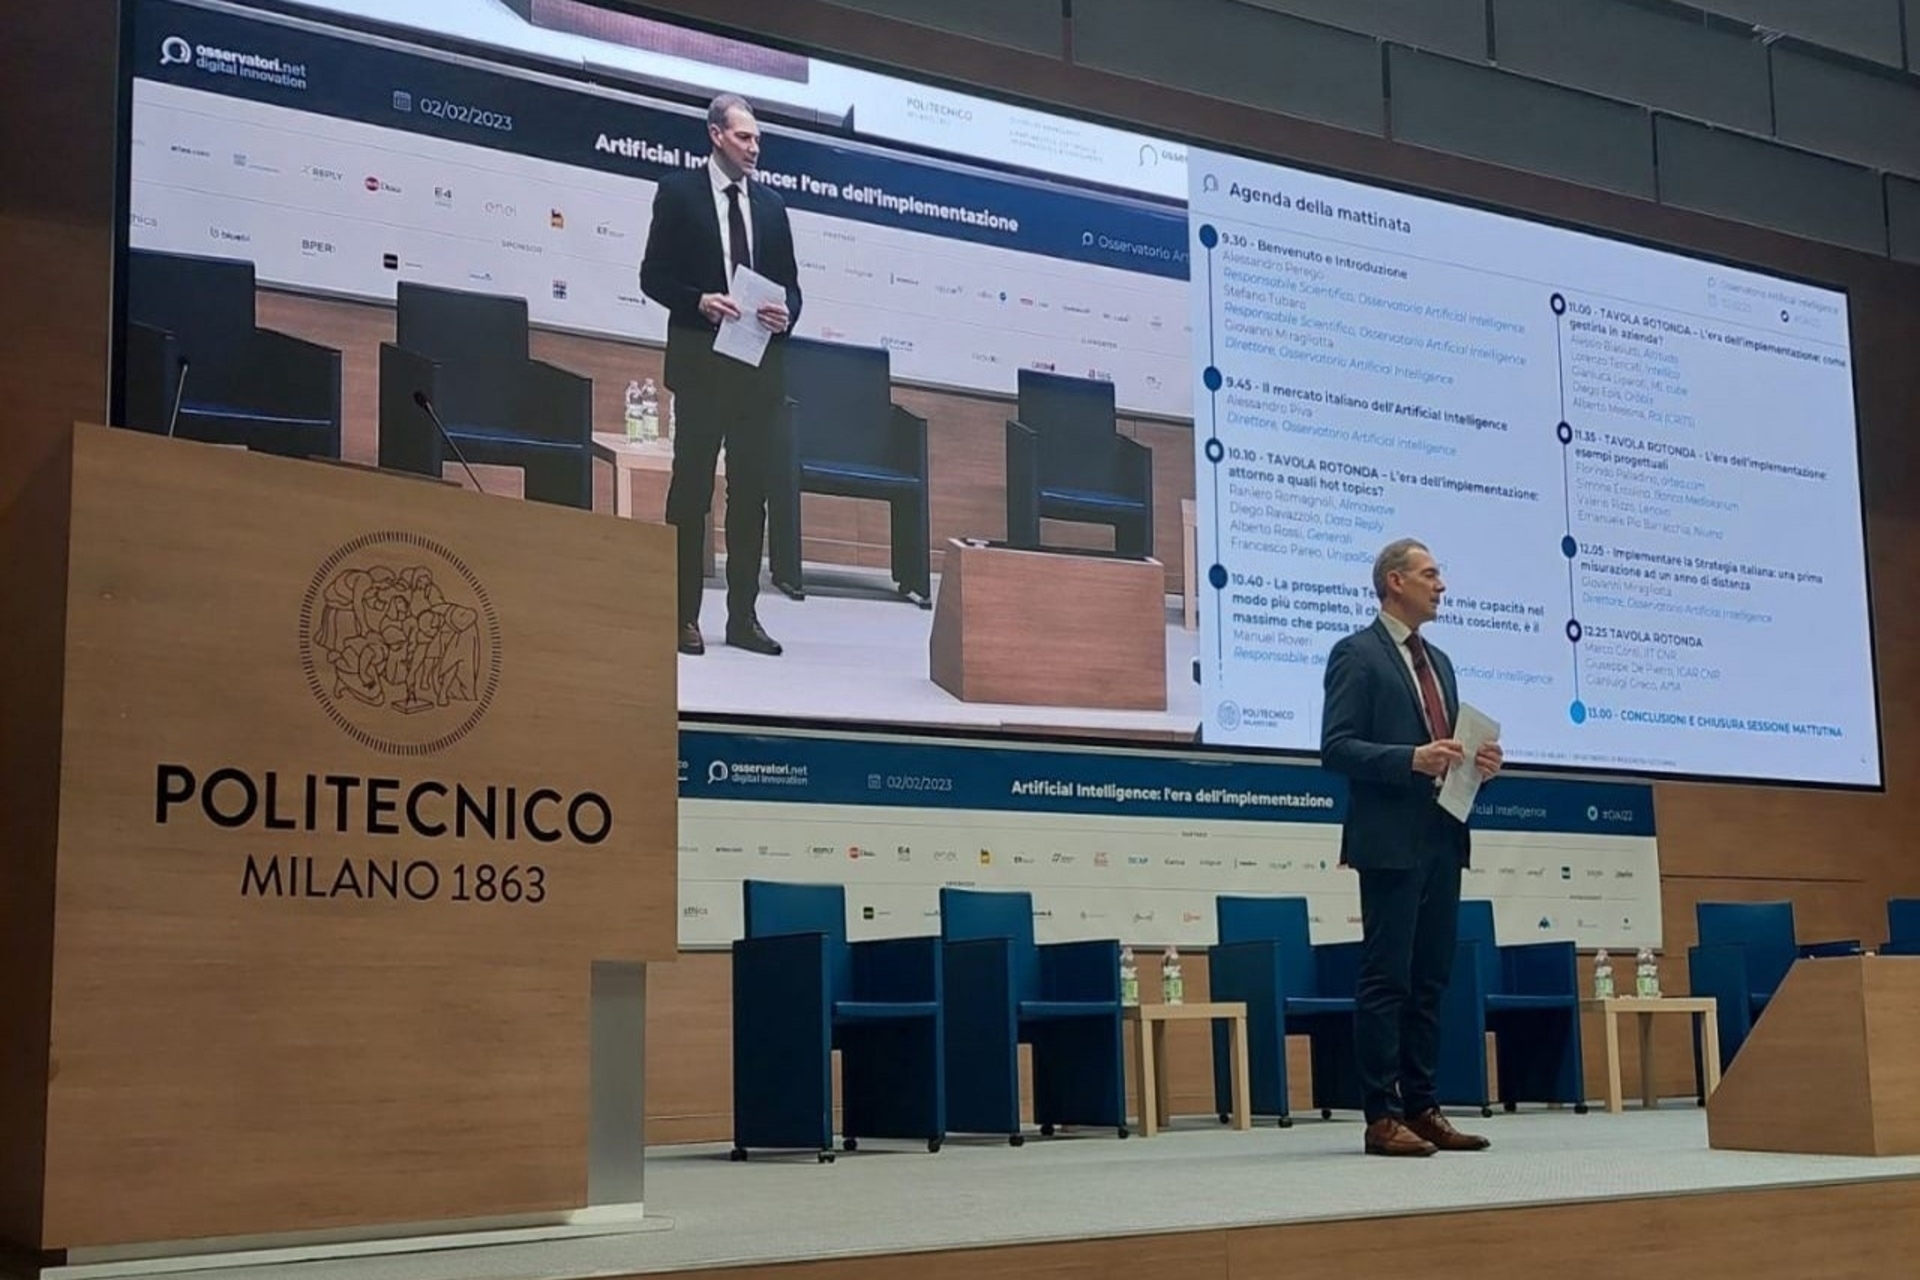 AI: Milanon ammattikorkeakoulun tekoälyä käsittelevän konferenssin puhujat